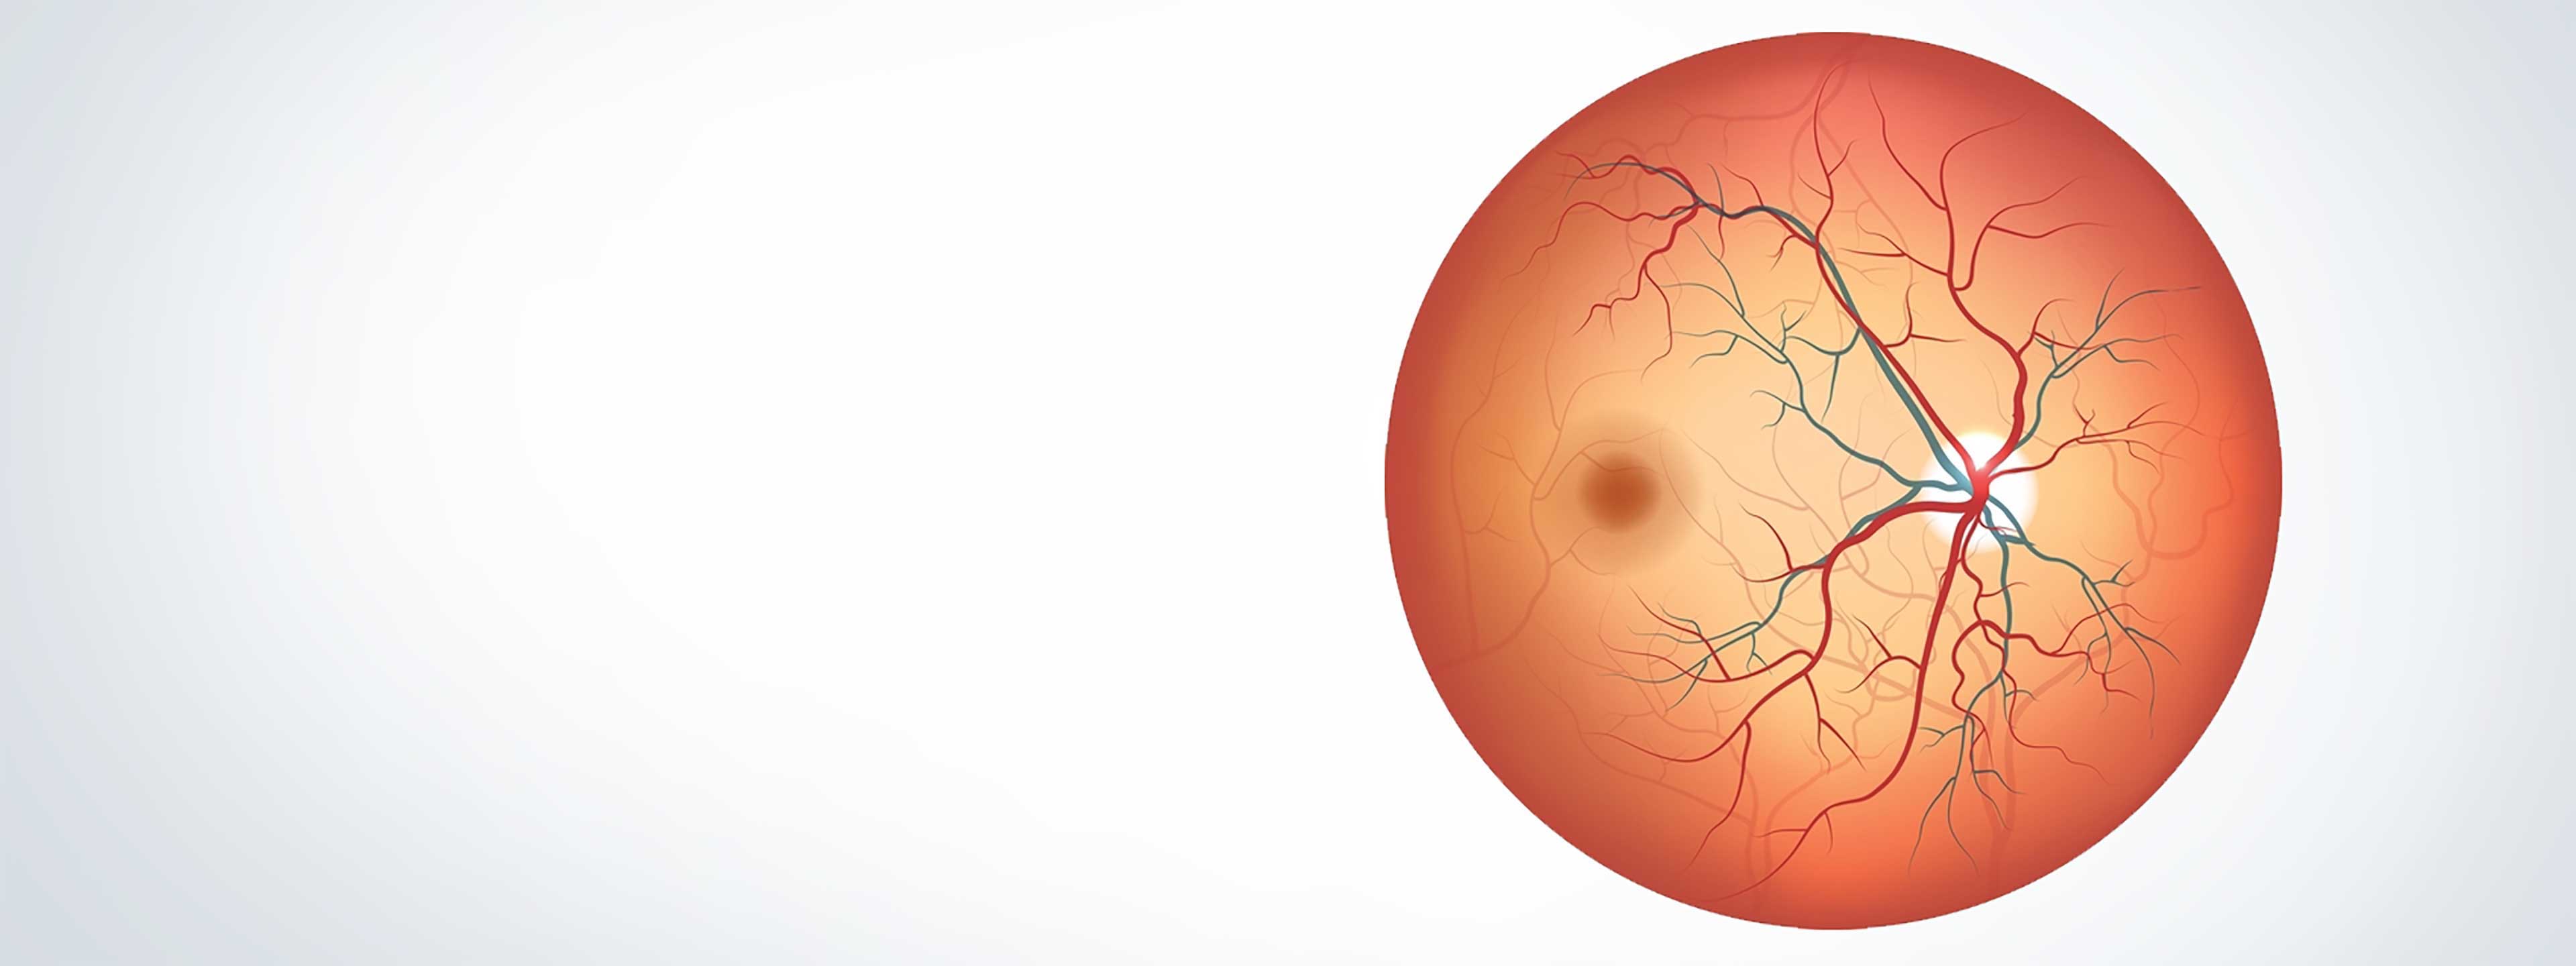 人的视网膜的图像。